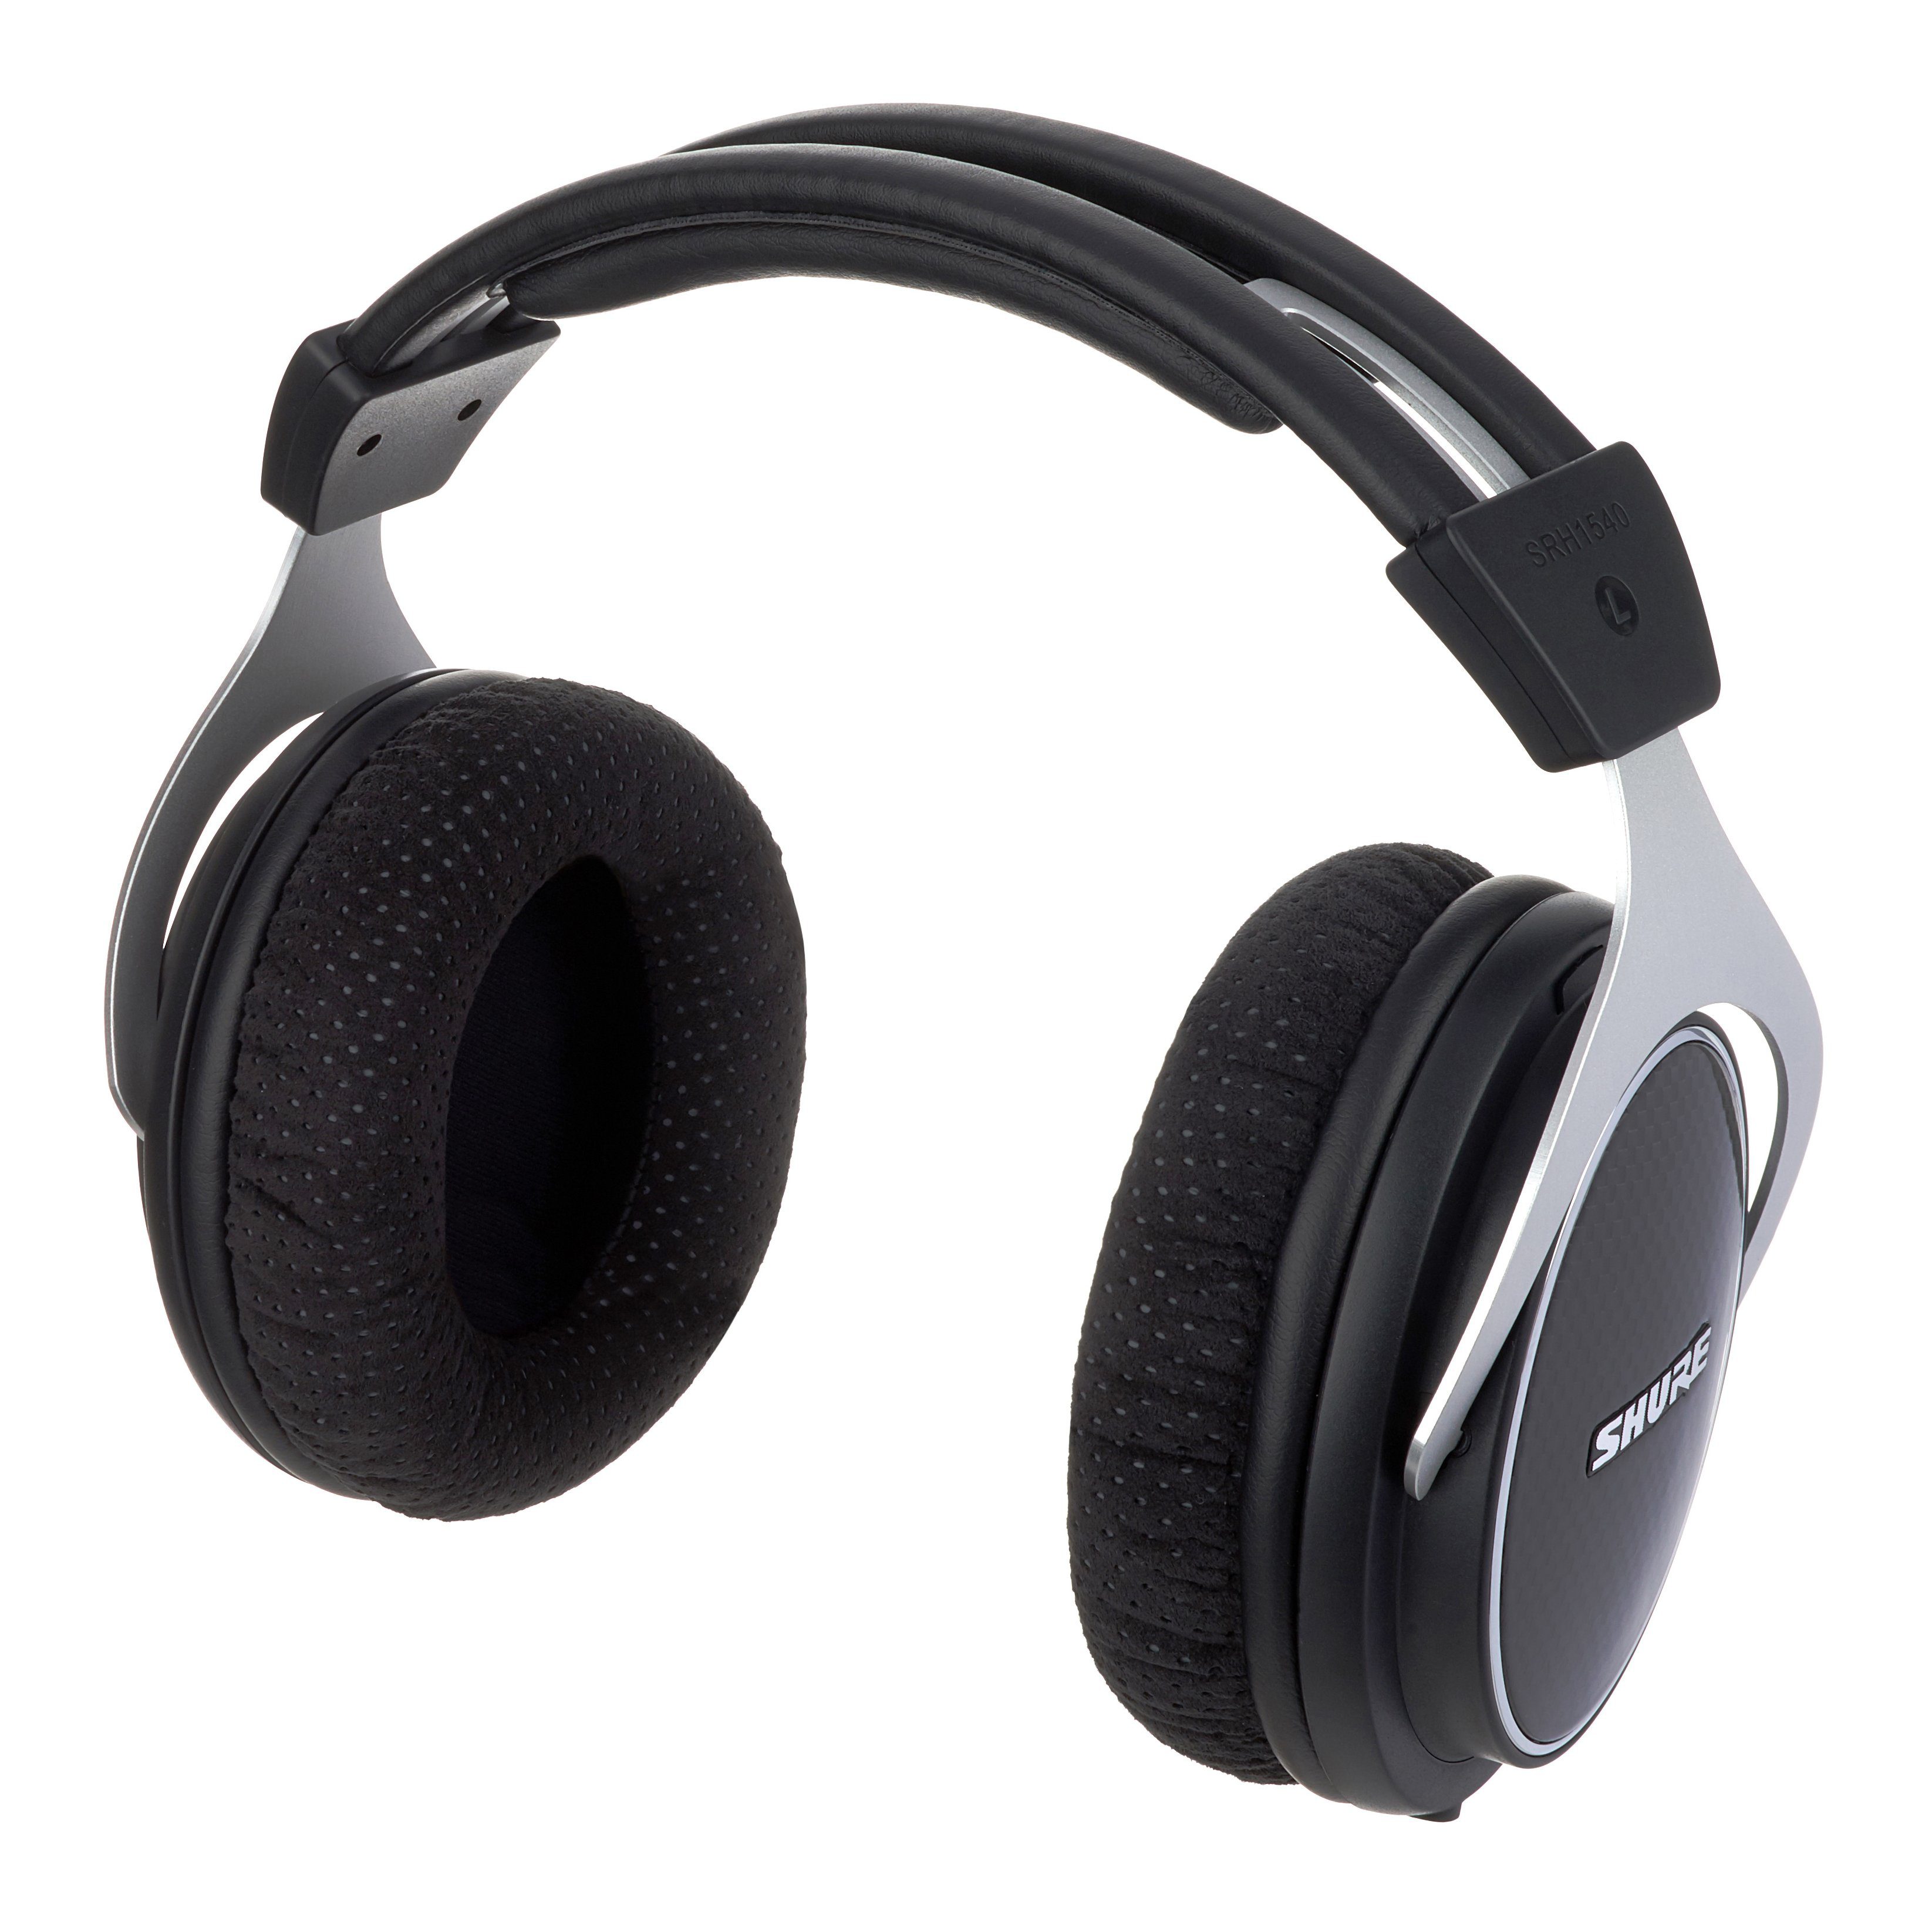 Shure SRH1540 Review | headphonecheck.com